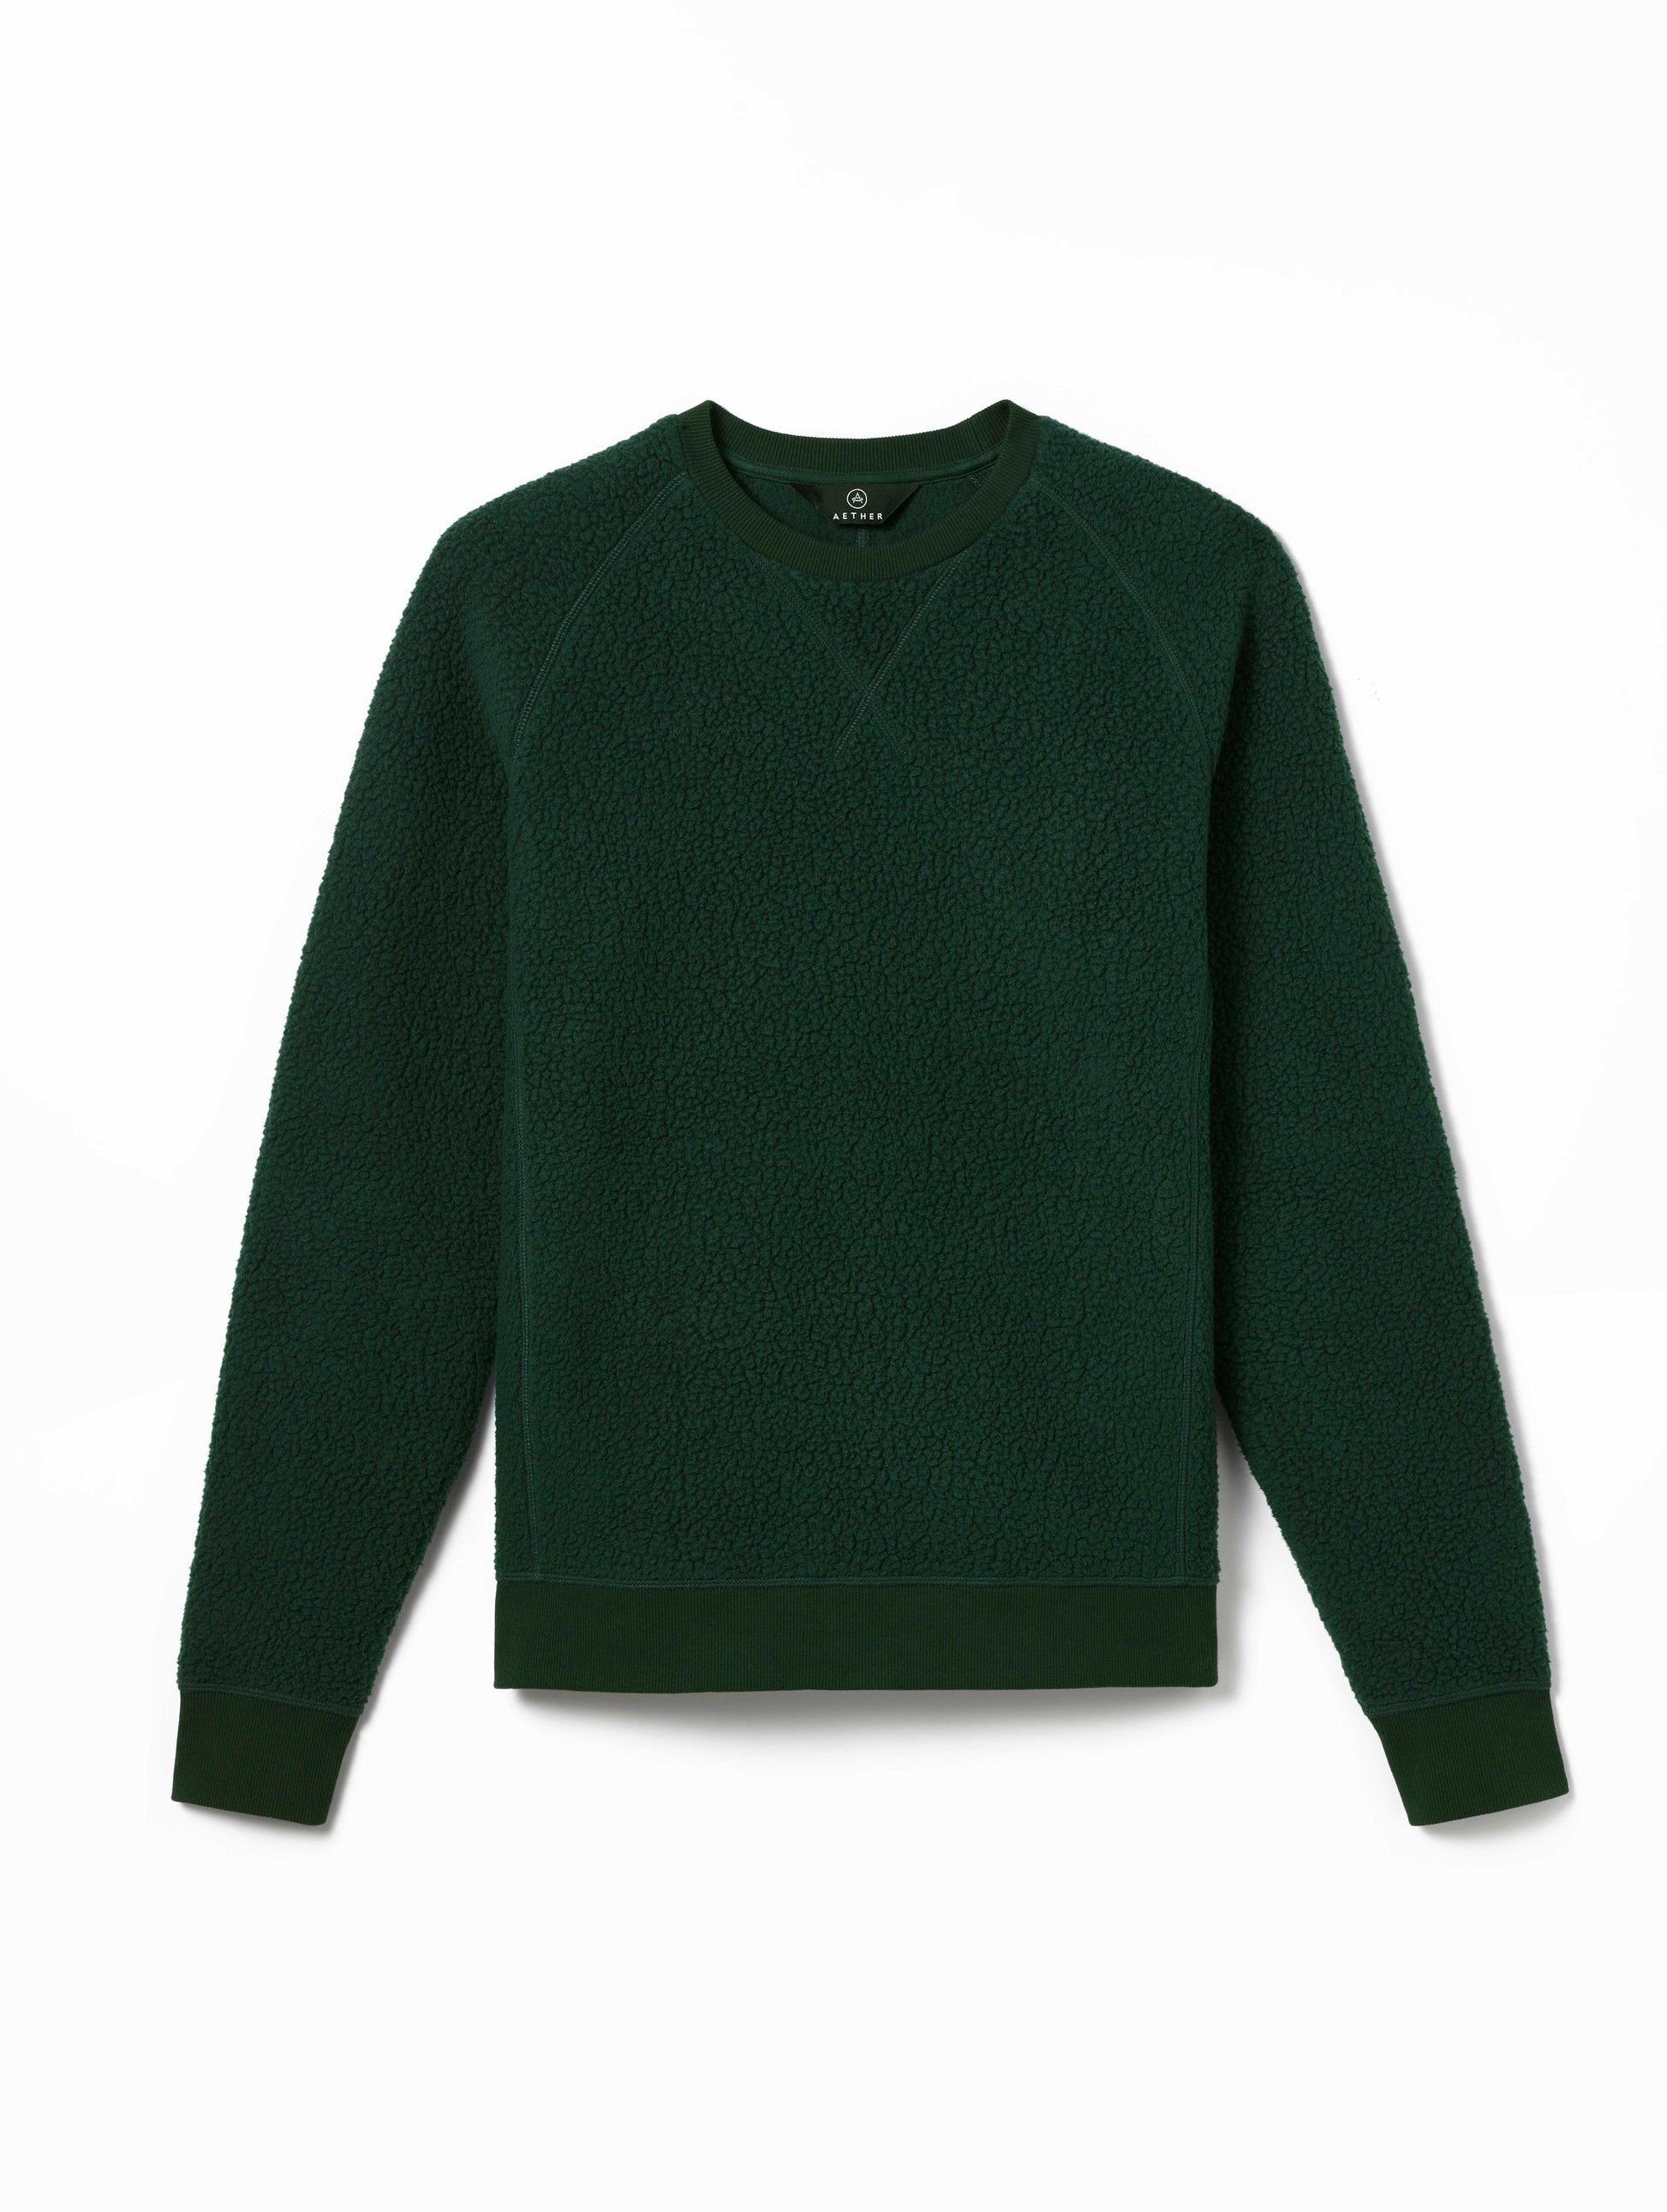 green fleece sweater for men